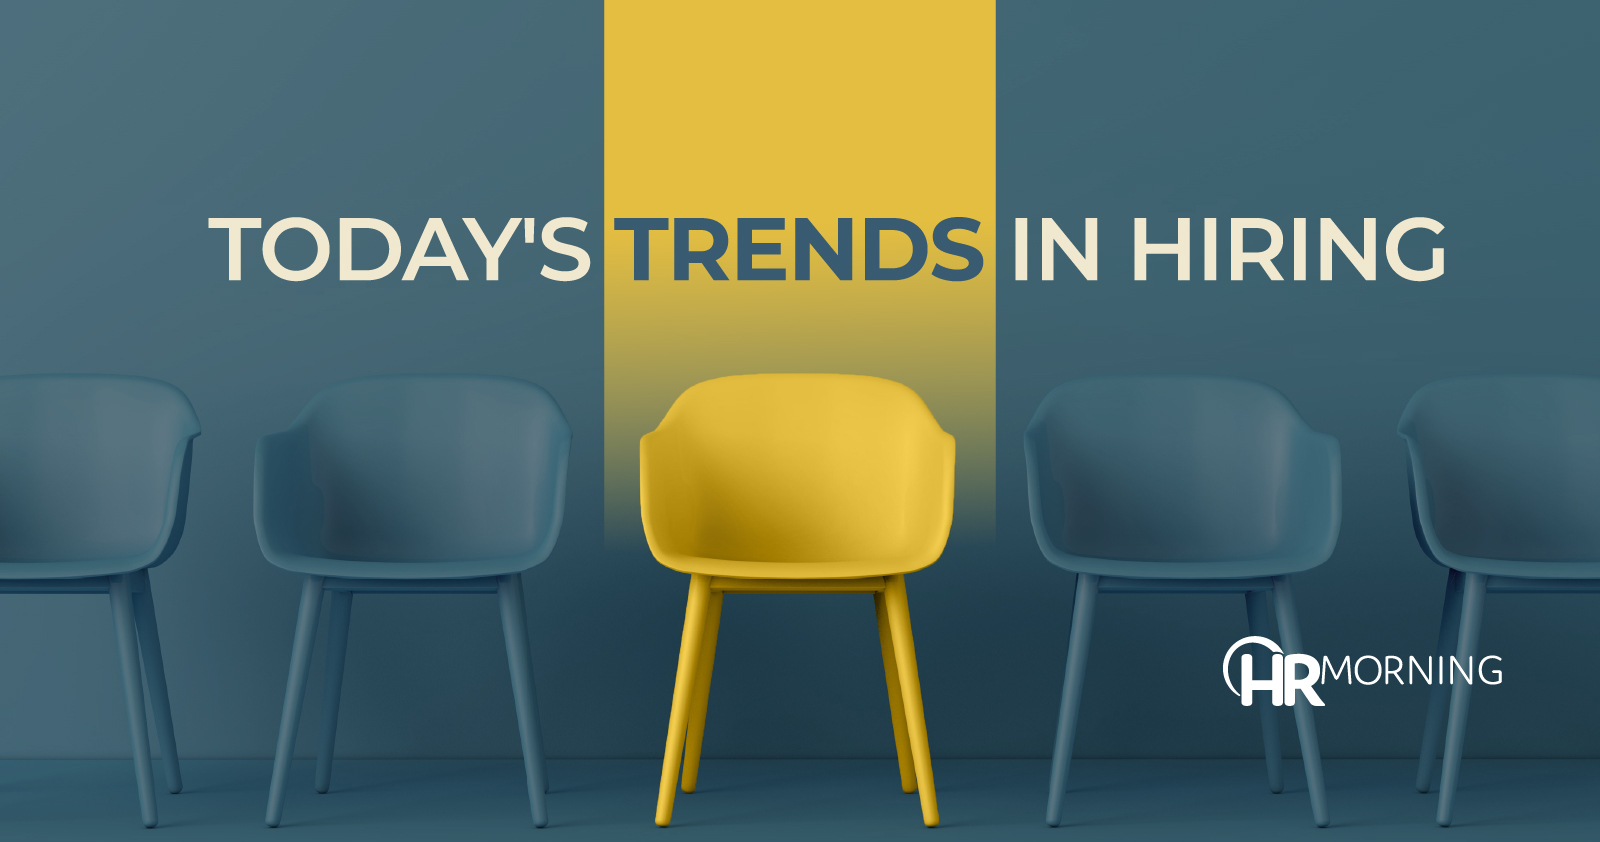 Today's trends in hiring